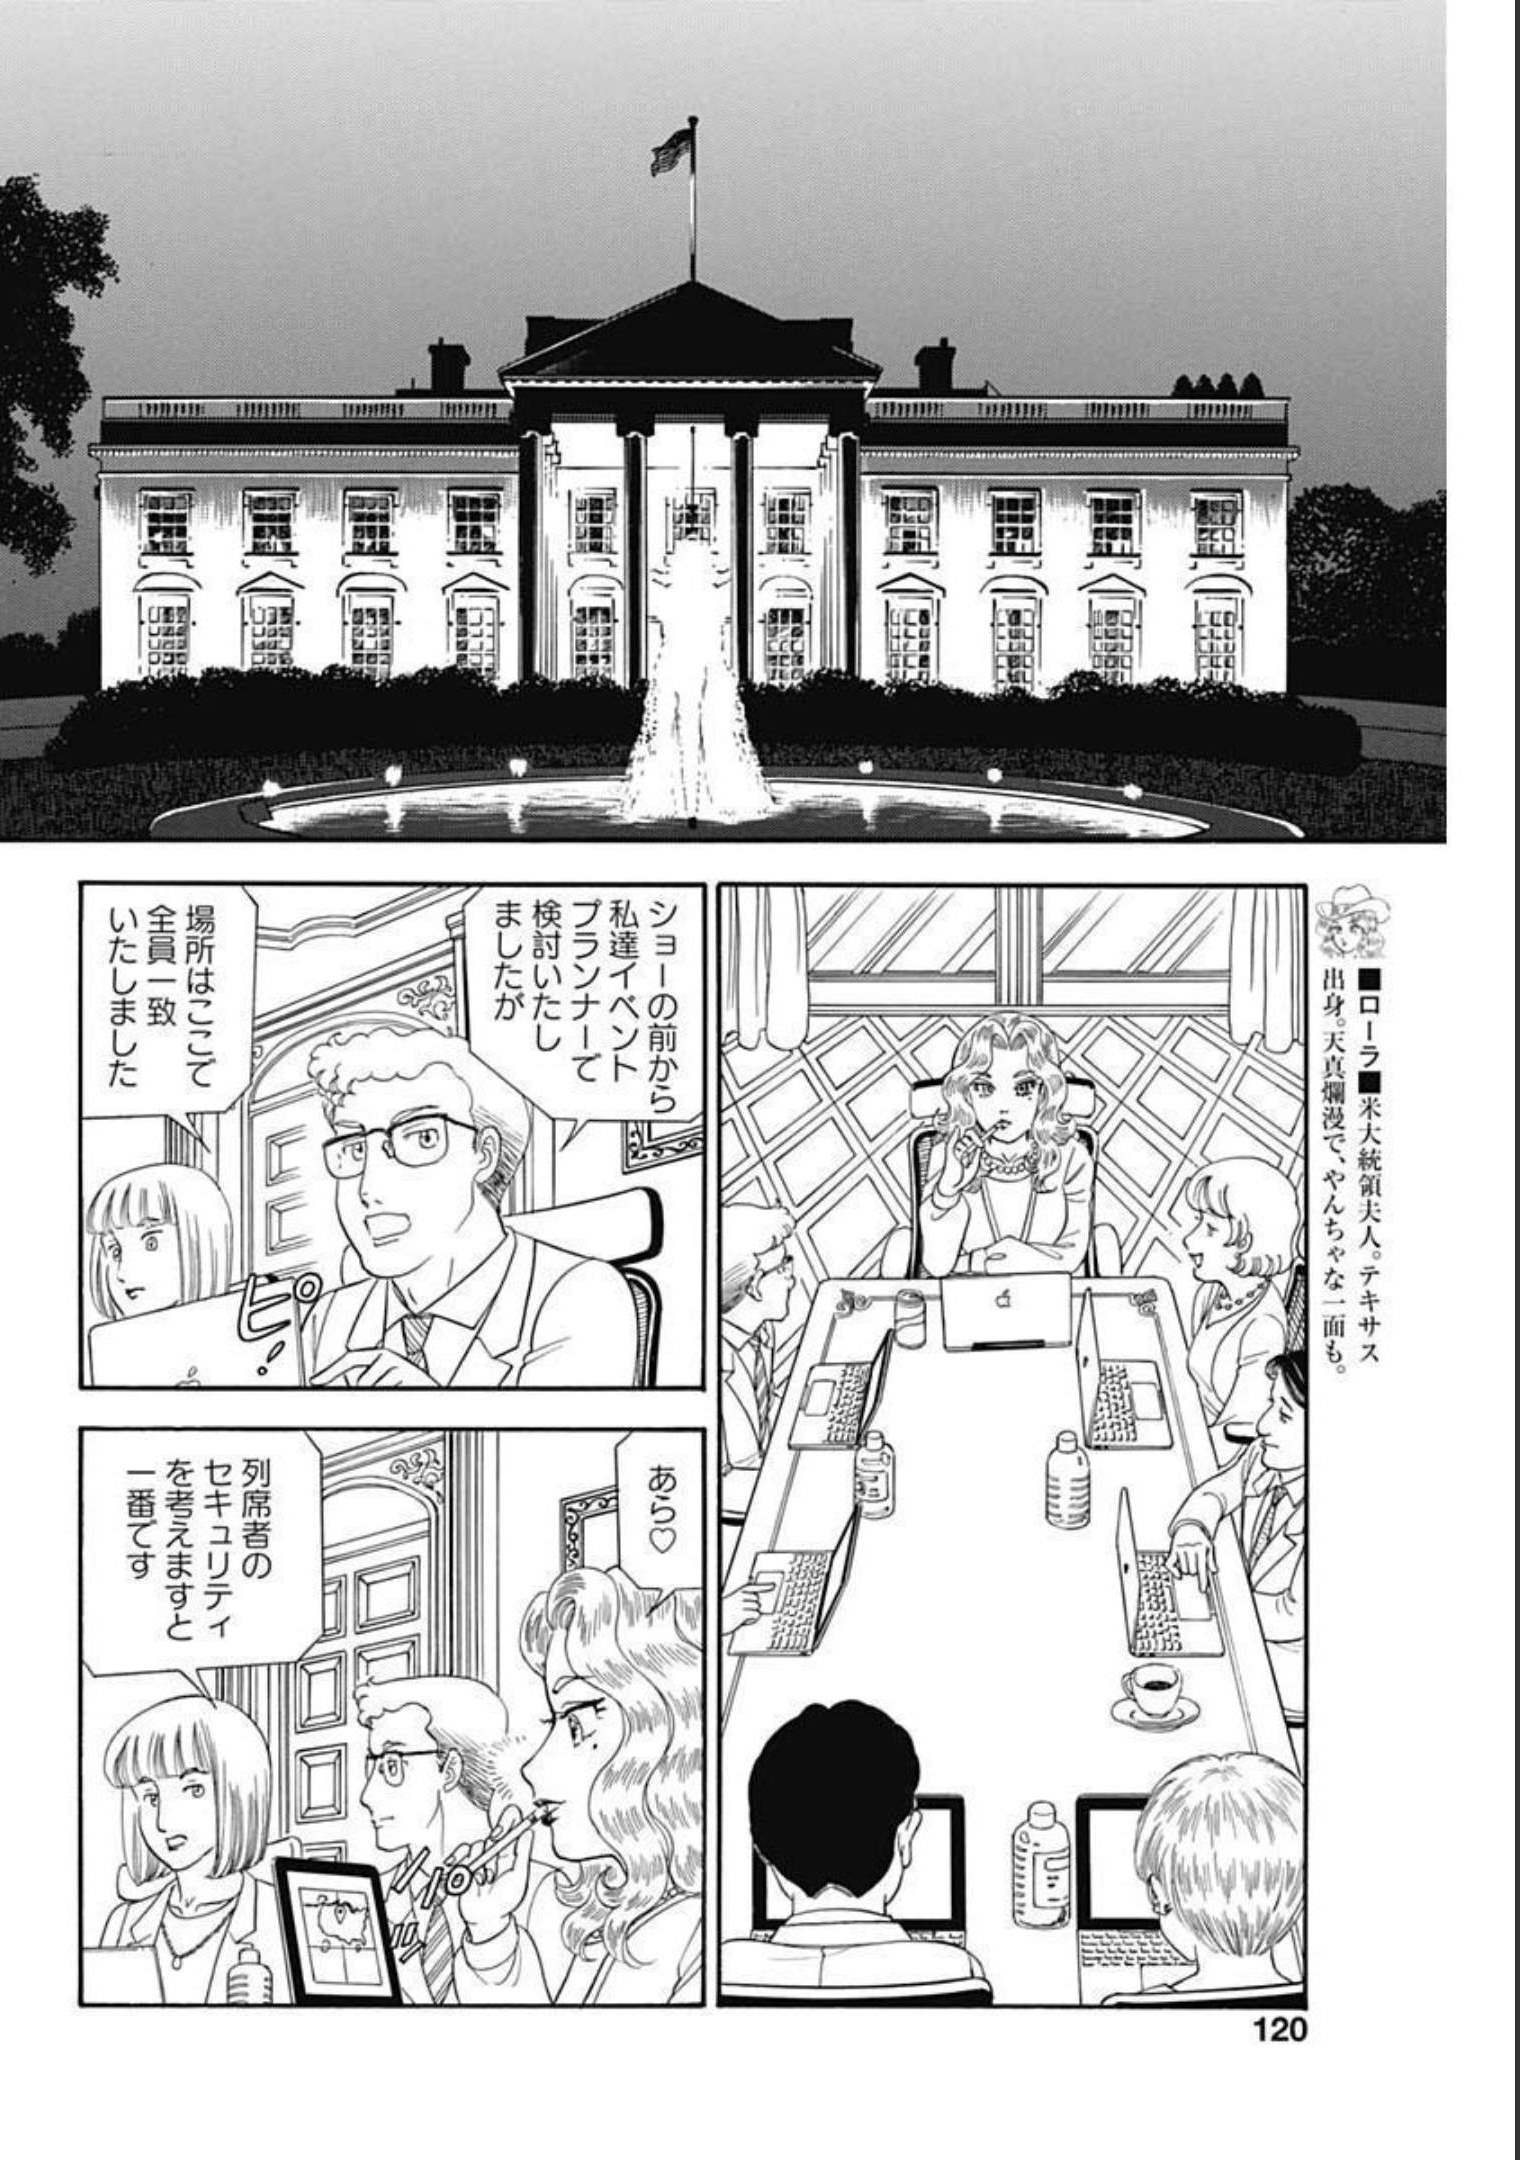 甘い生活 2nd season 第204話 - Page 6